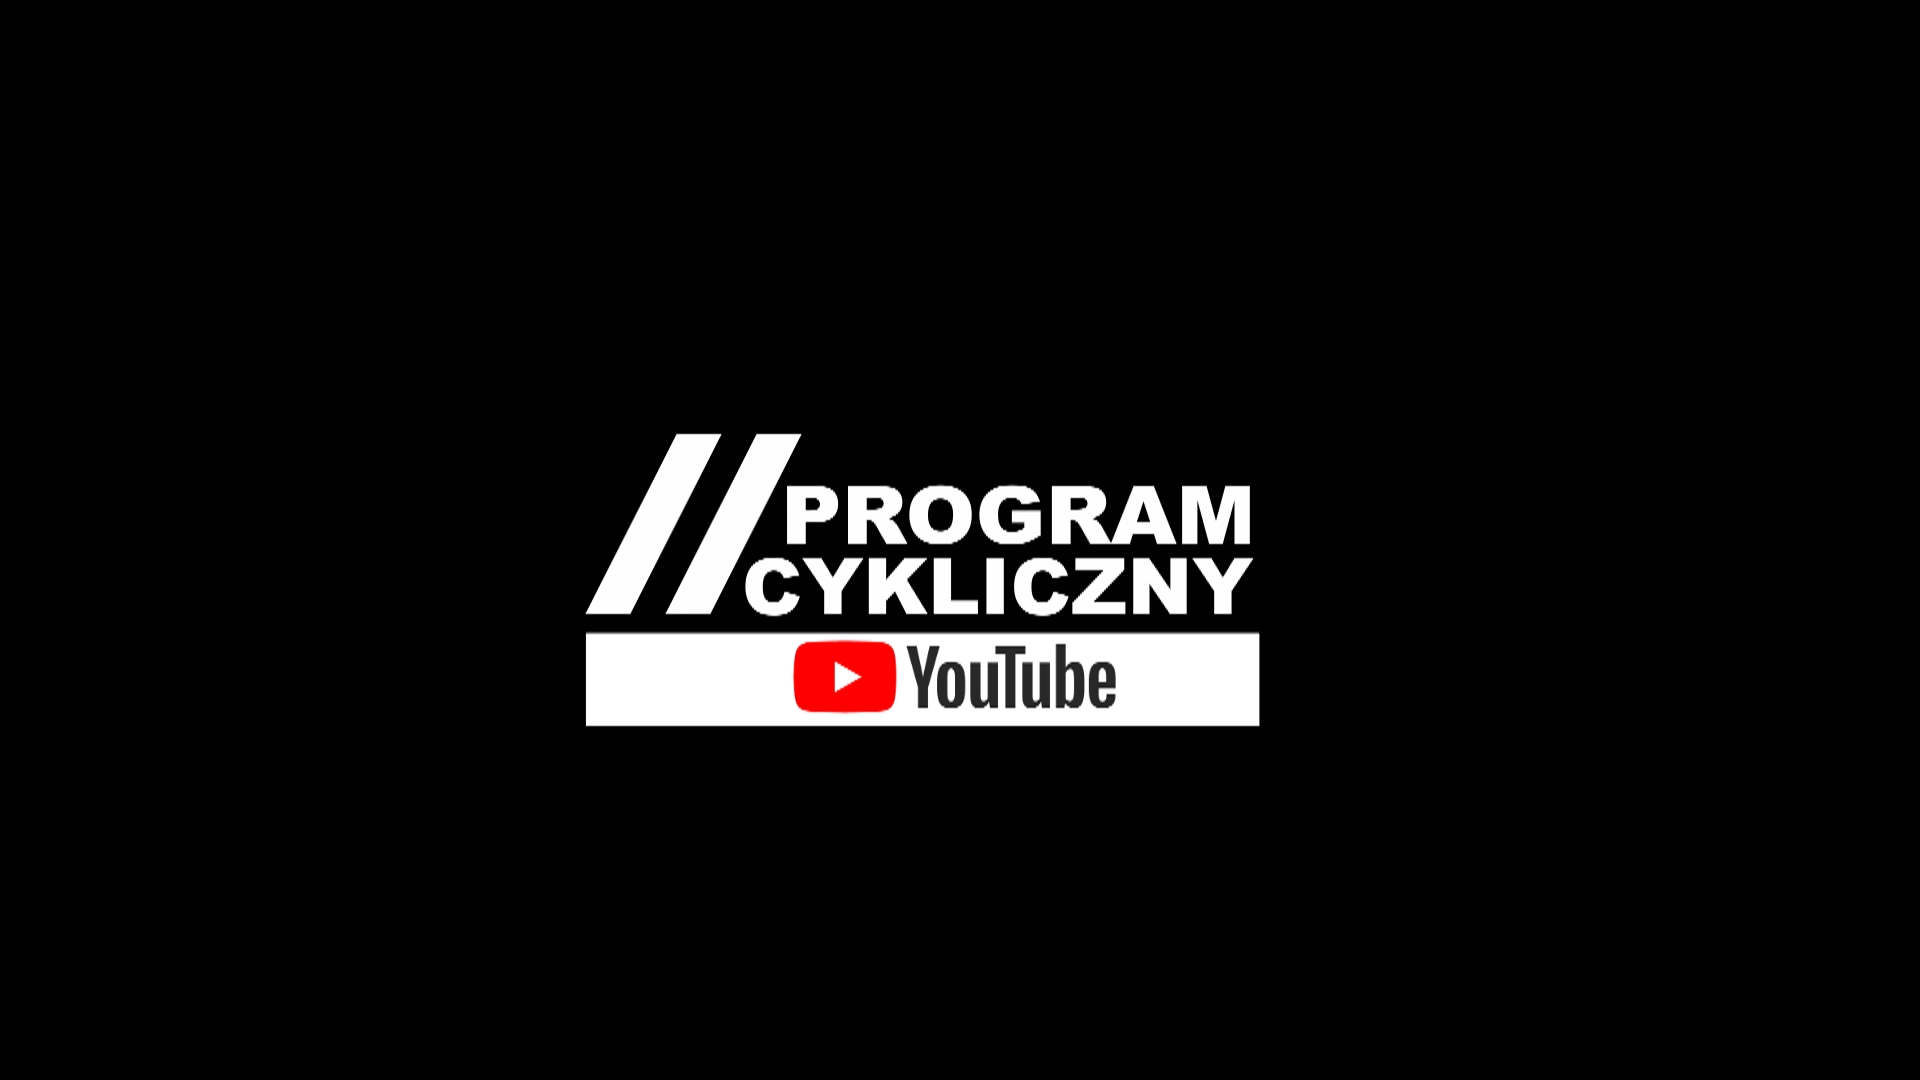 Program Cykliczny powraca na YouTube